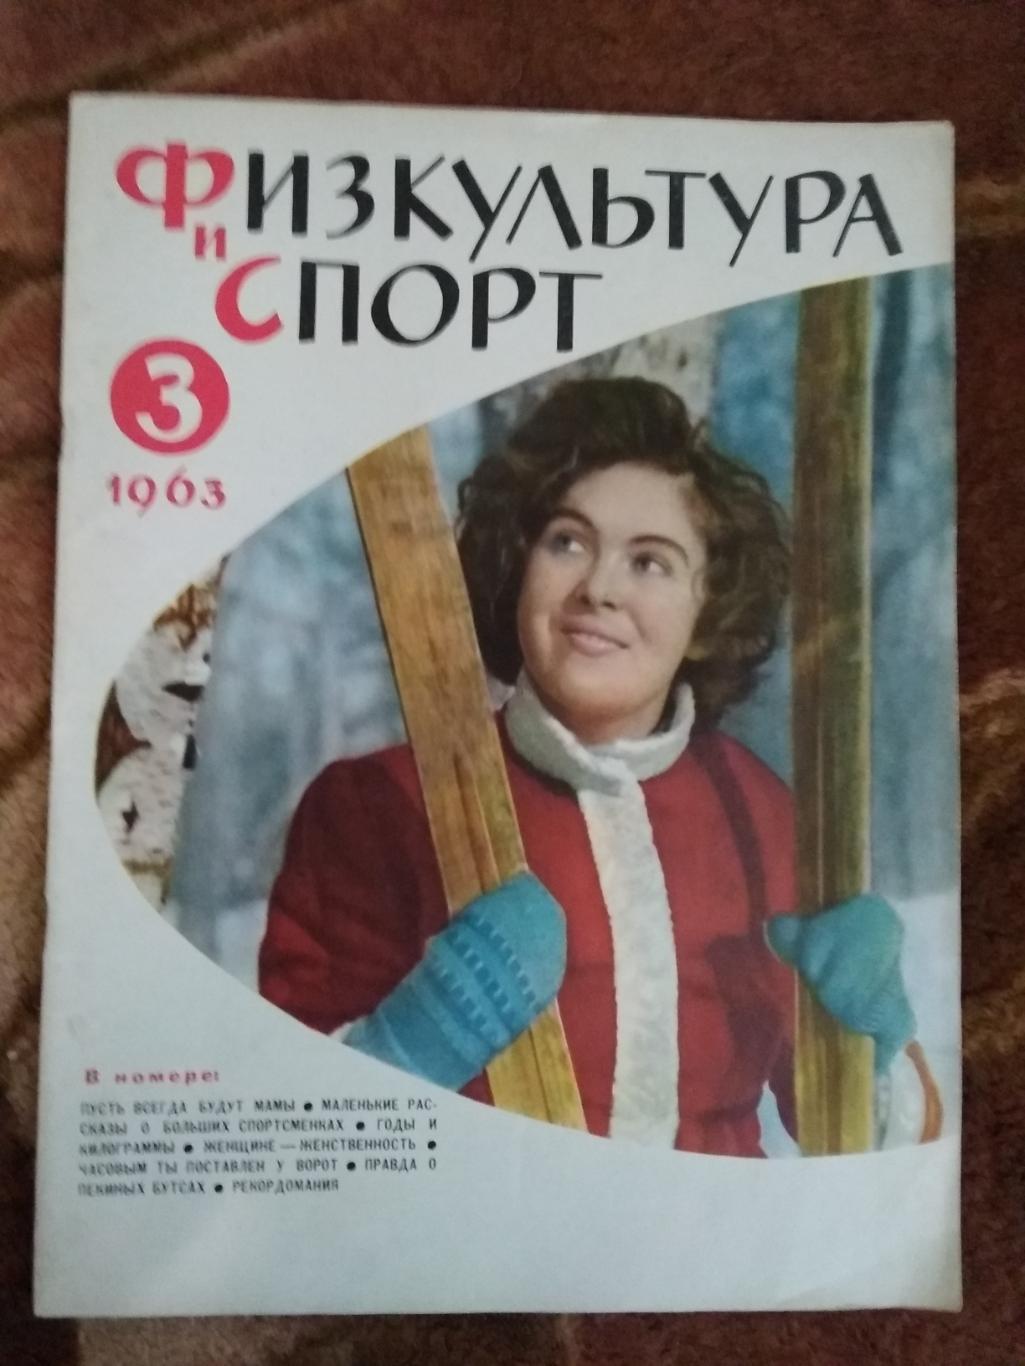 Журнал.Физкультура и спорт№ 3 1963 г. (40 лет ДСО Динамо).(ФиС).